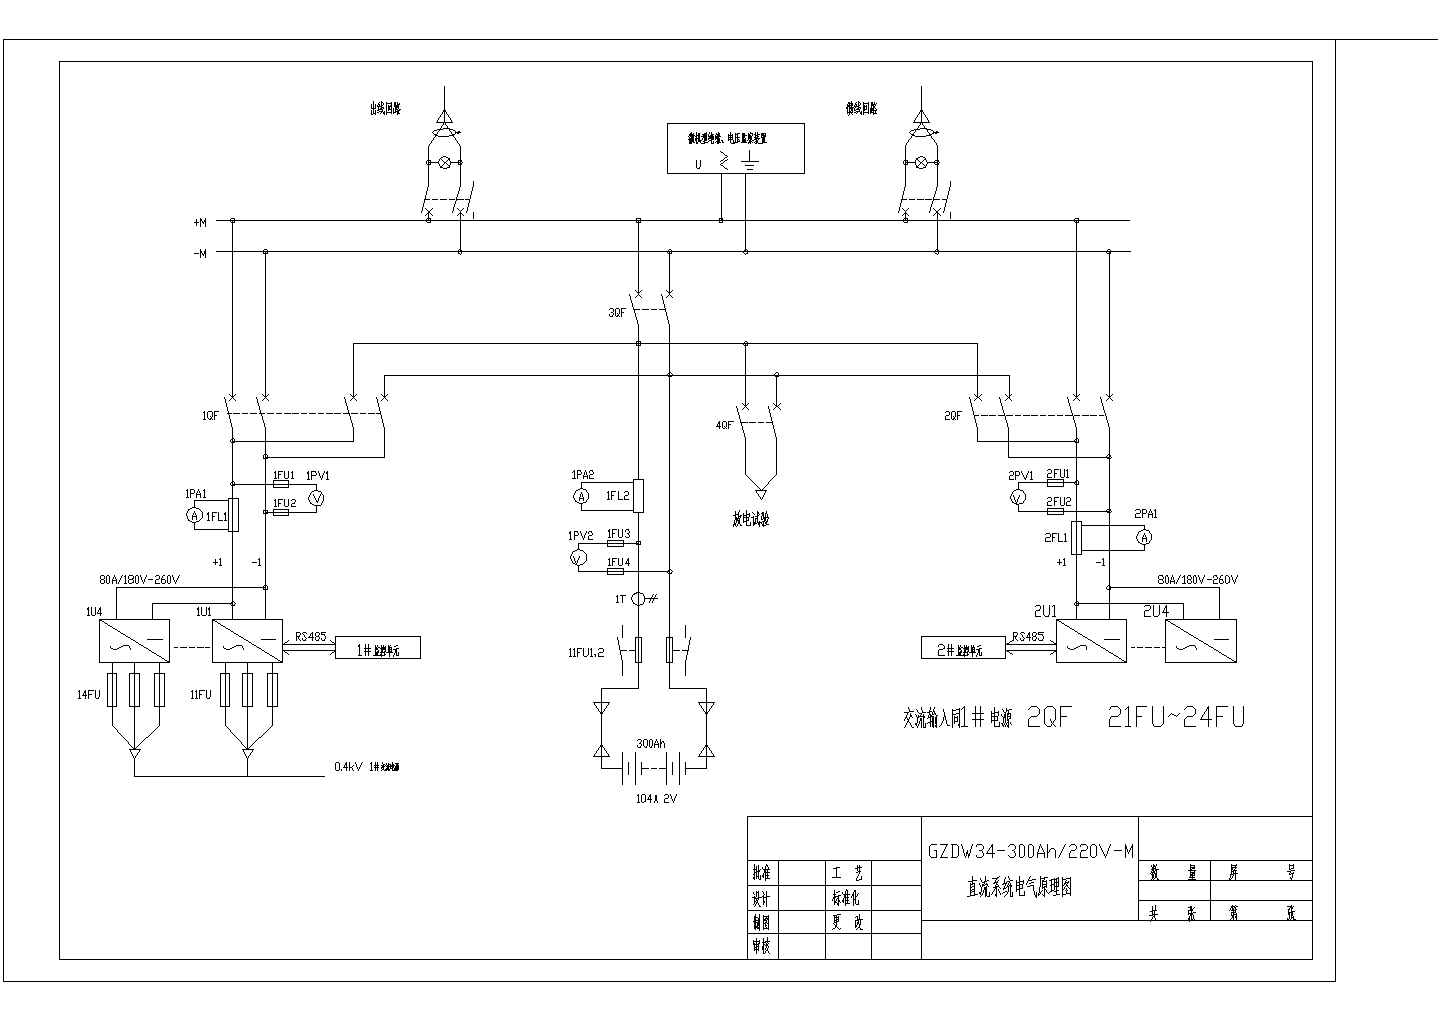 GZDW34-300Ah-220V-M直流系统电气原理图